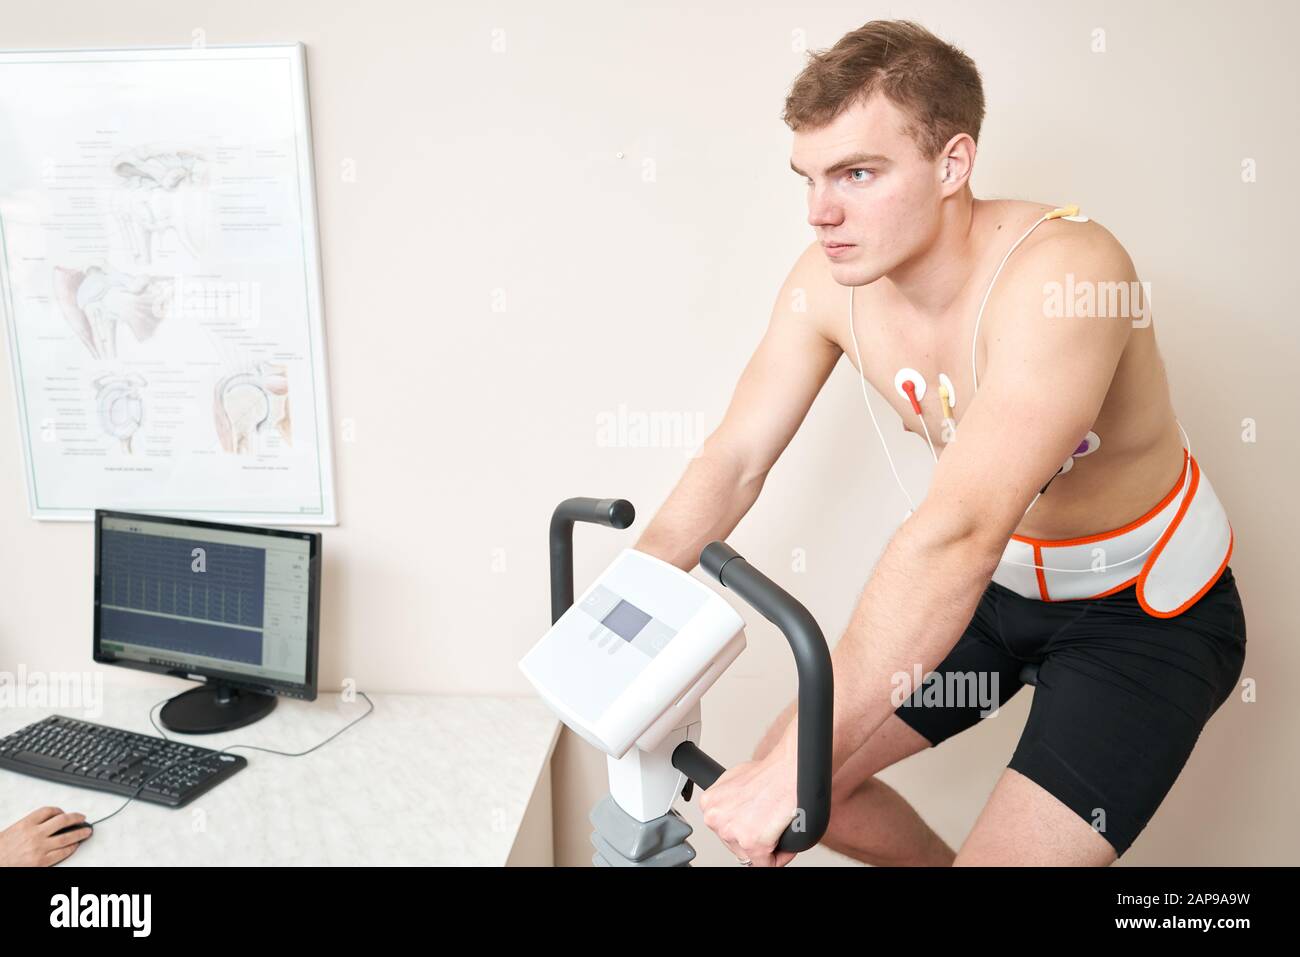 Homme patient, pédaler sur un système de test de stress ergomètre de vélo pour la fonction de coeur vérifiée. L'athlète effectue un test de stress cardiaque dans un médecin Banque D'Images